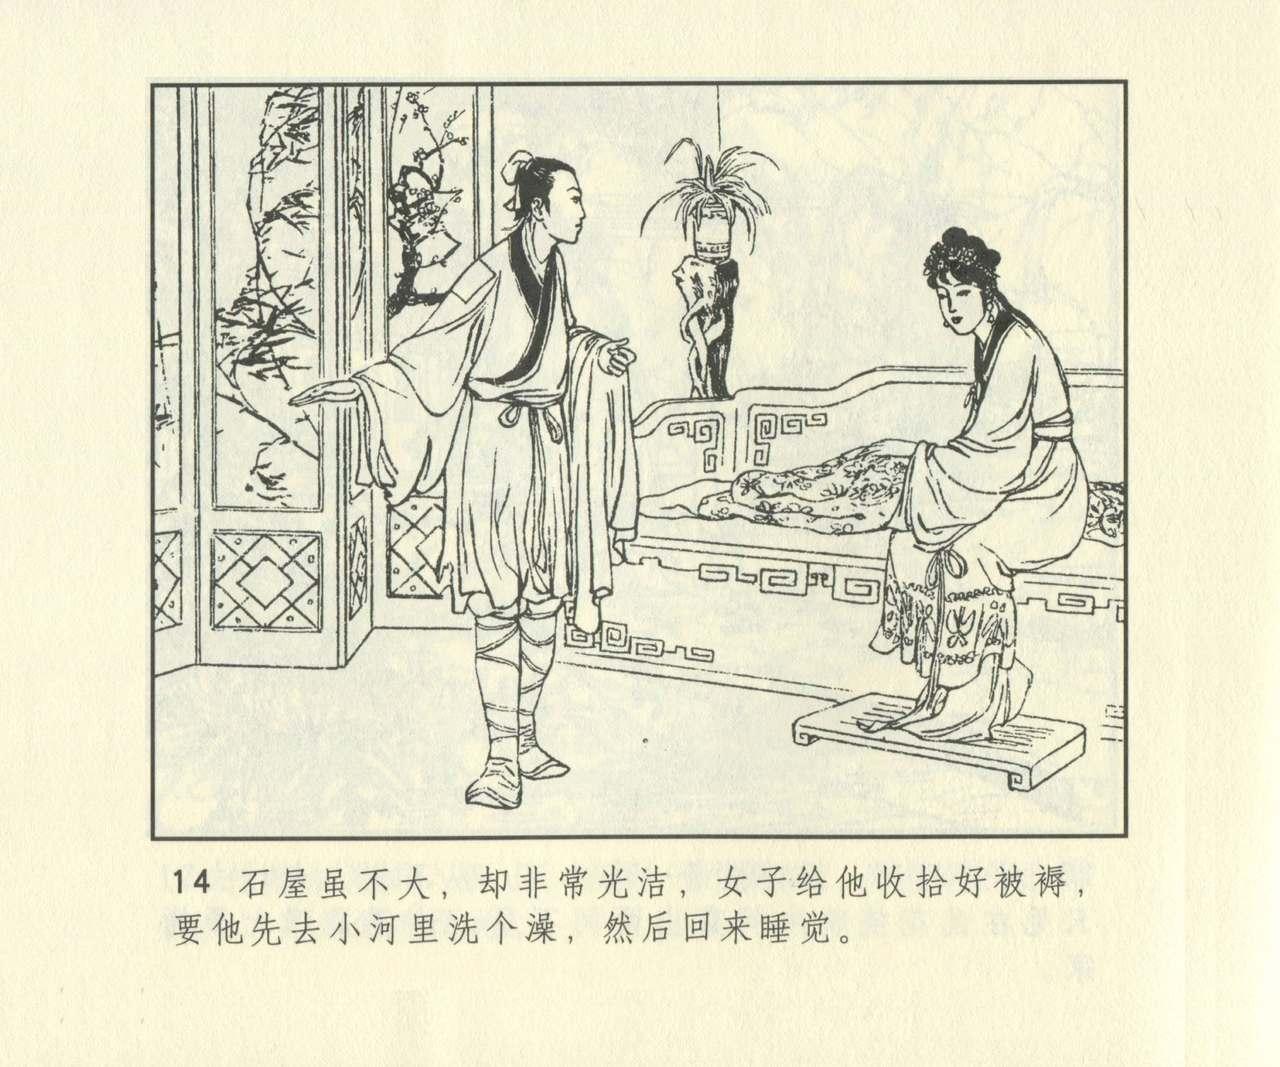 聊斋志异 张玮等绘 天津人民美术出版社 卷二十一 ~ 三十 630